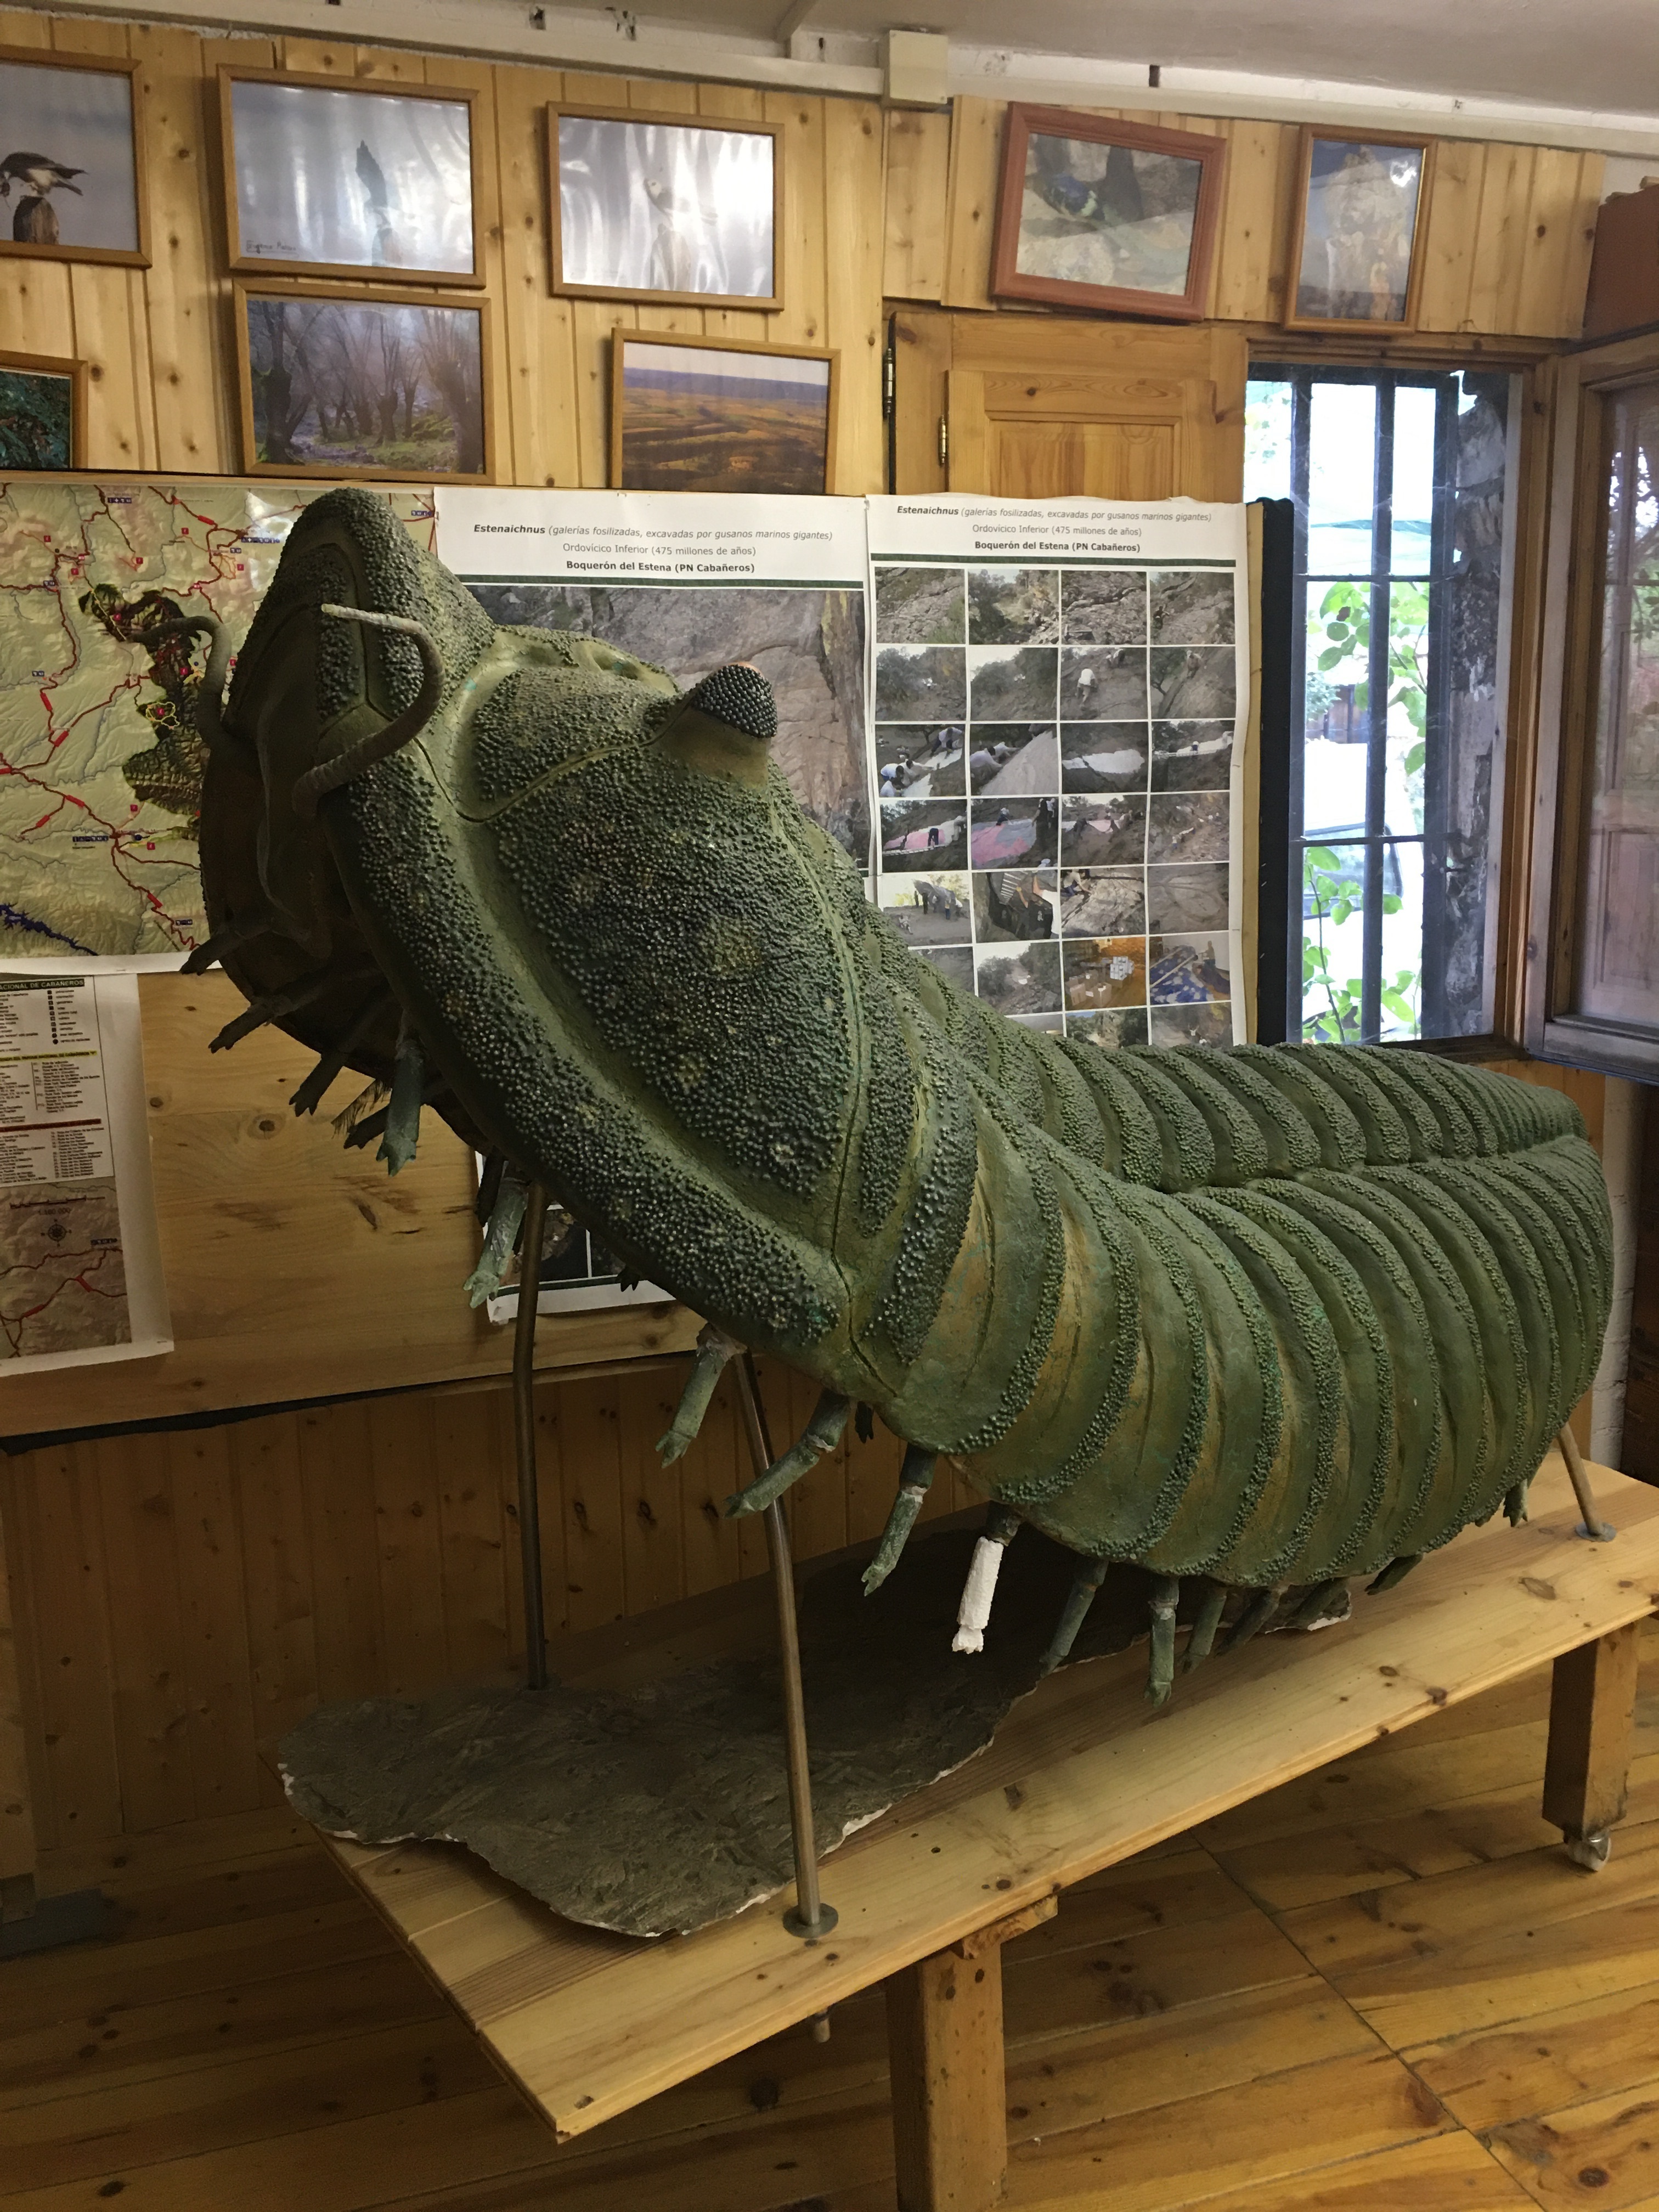 Réplica gigante de un trilobite en el museo de la Casa Rural Boquerón de Estena.